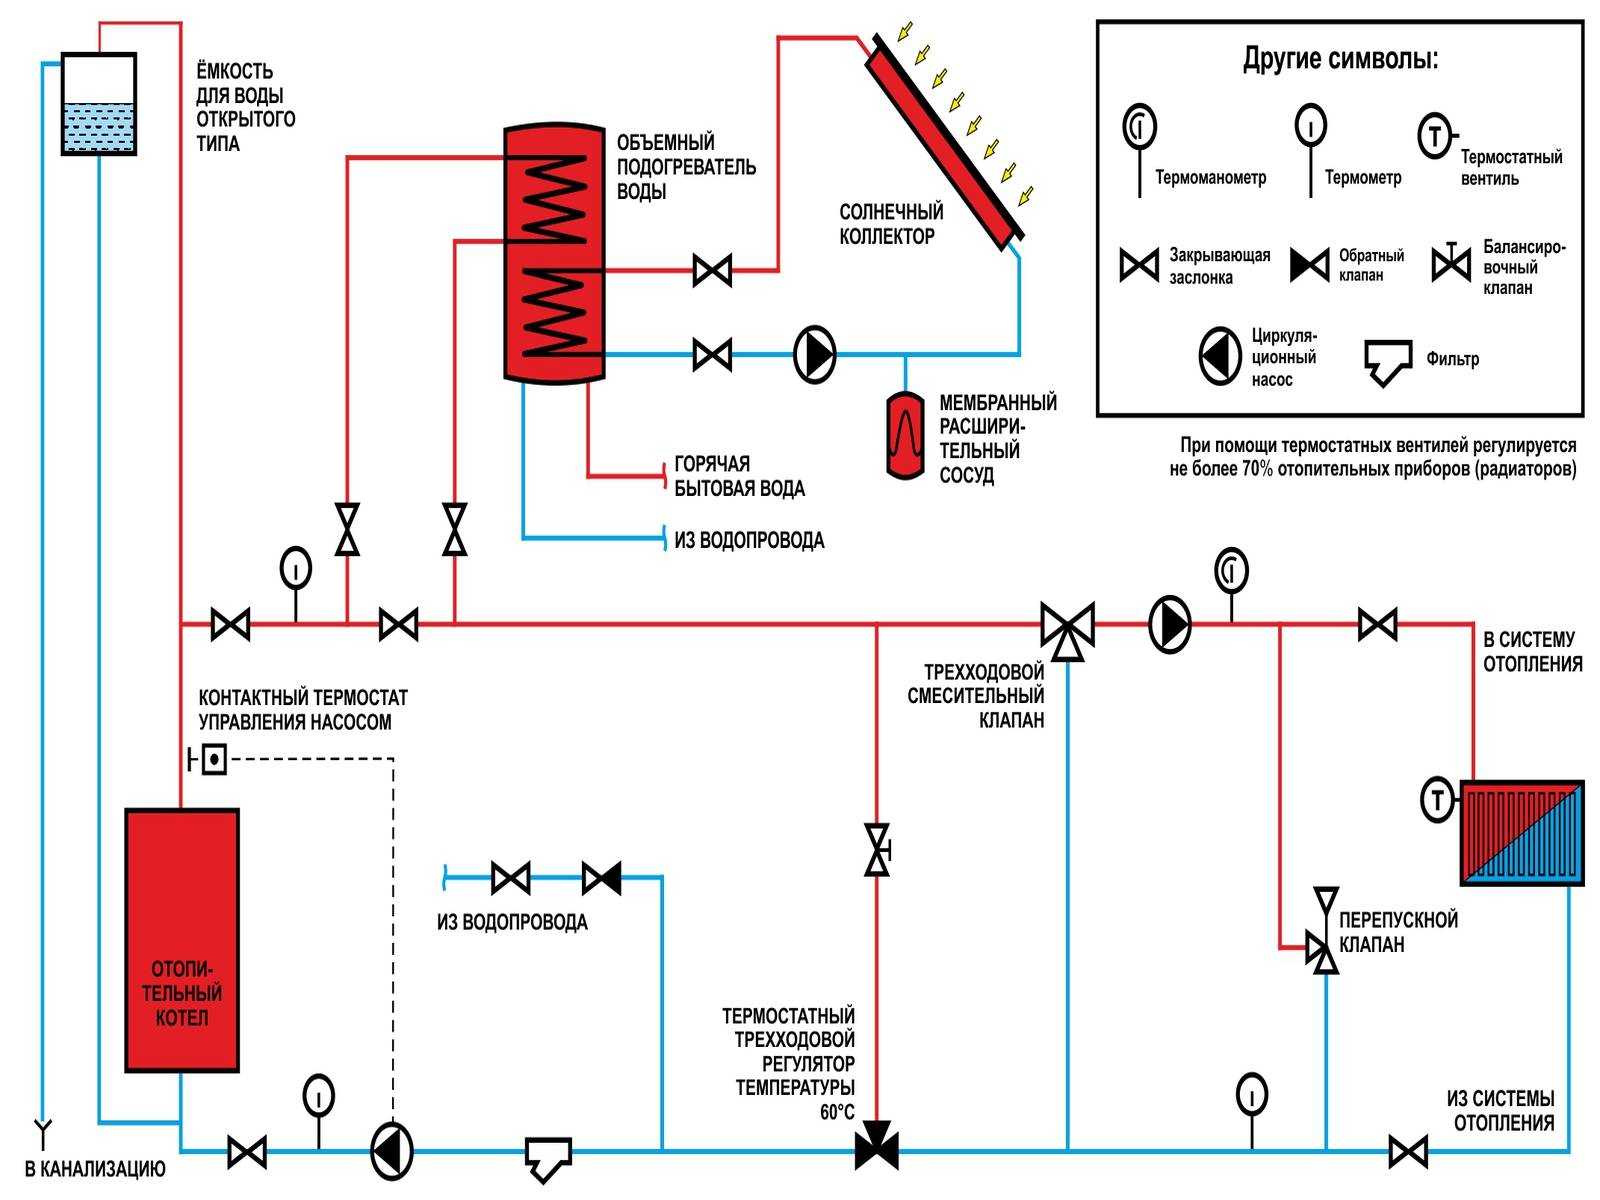 Как залить воду в отопление: инструкция для закрытой и открытой систем | 5domov.ru - статьи о строительстве, ремонте, отделке домов и квартир